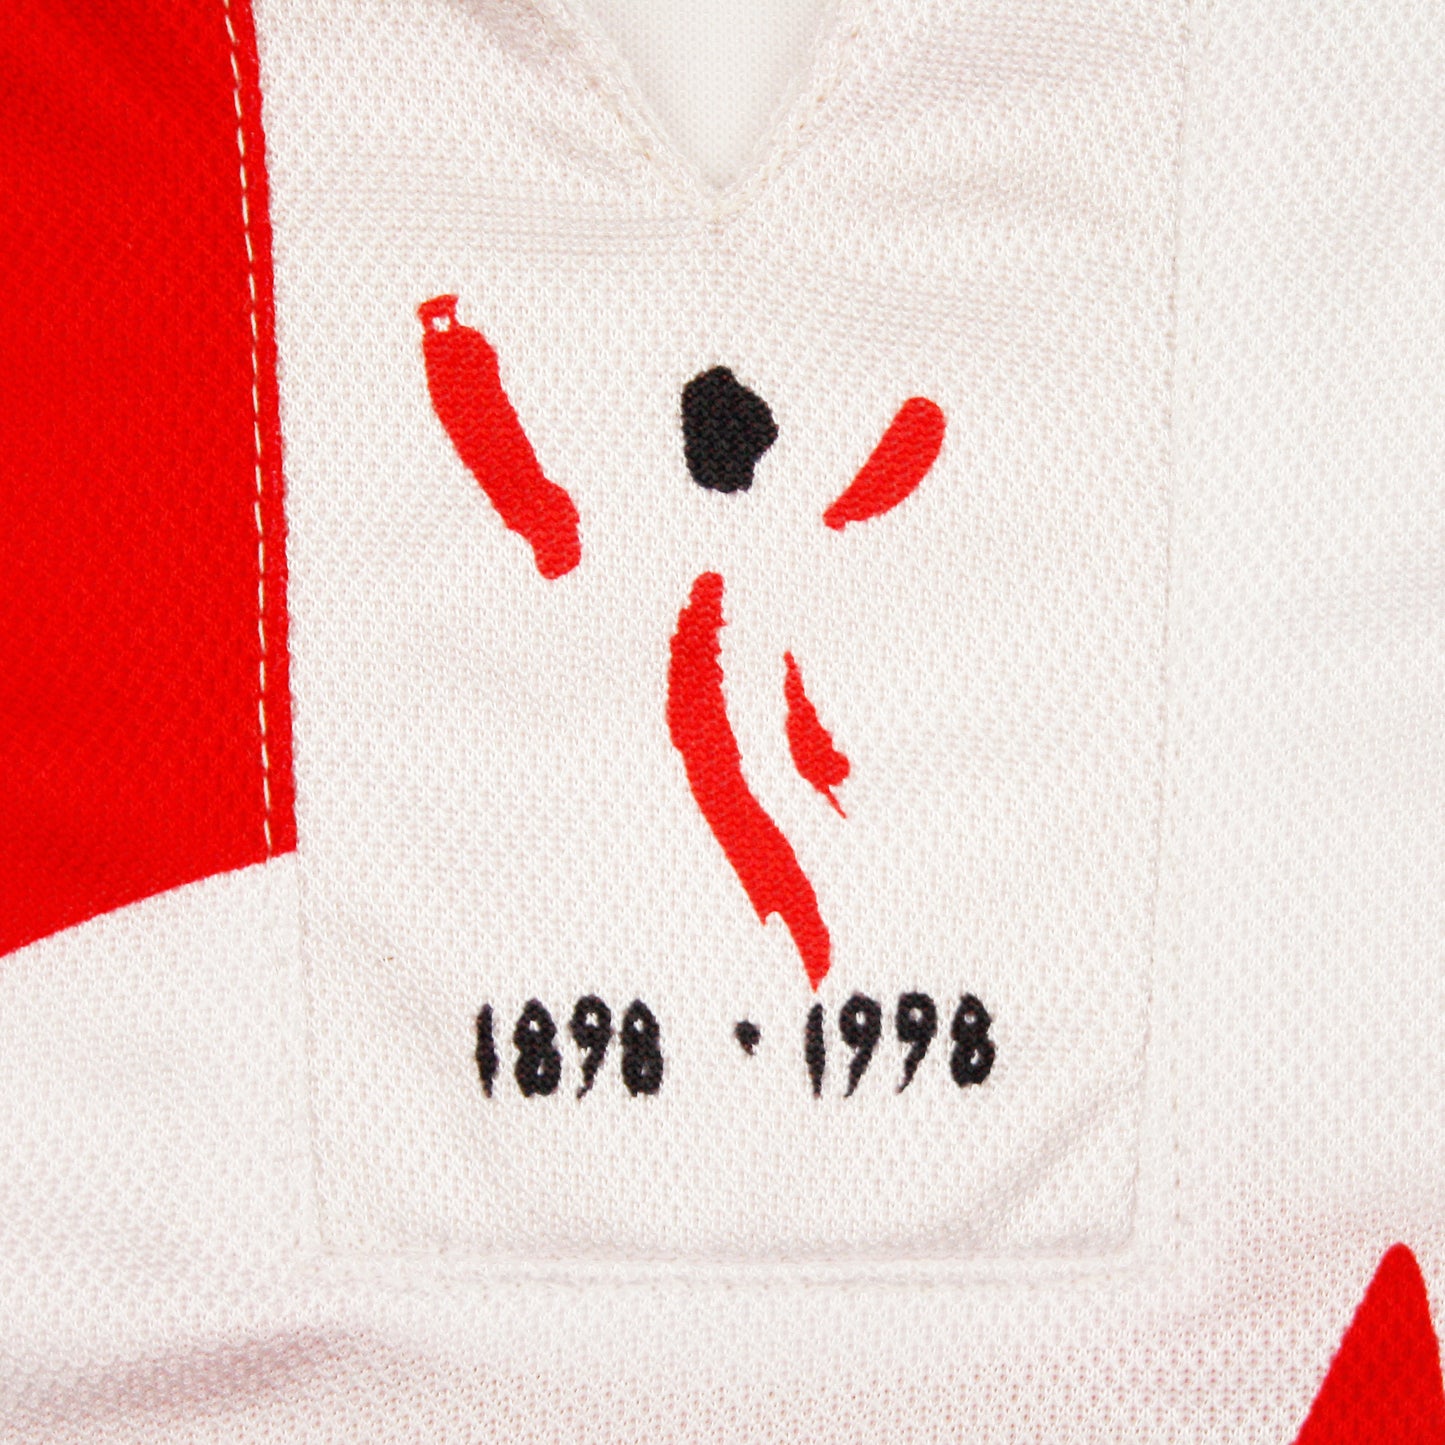 Athletic Bilbao 97/98 • Camiseta Tercera *Centenario* • XL